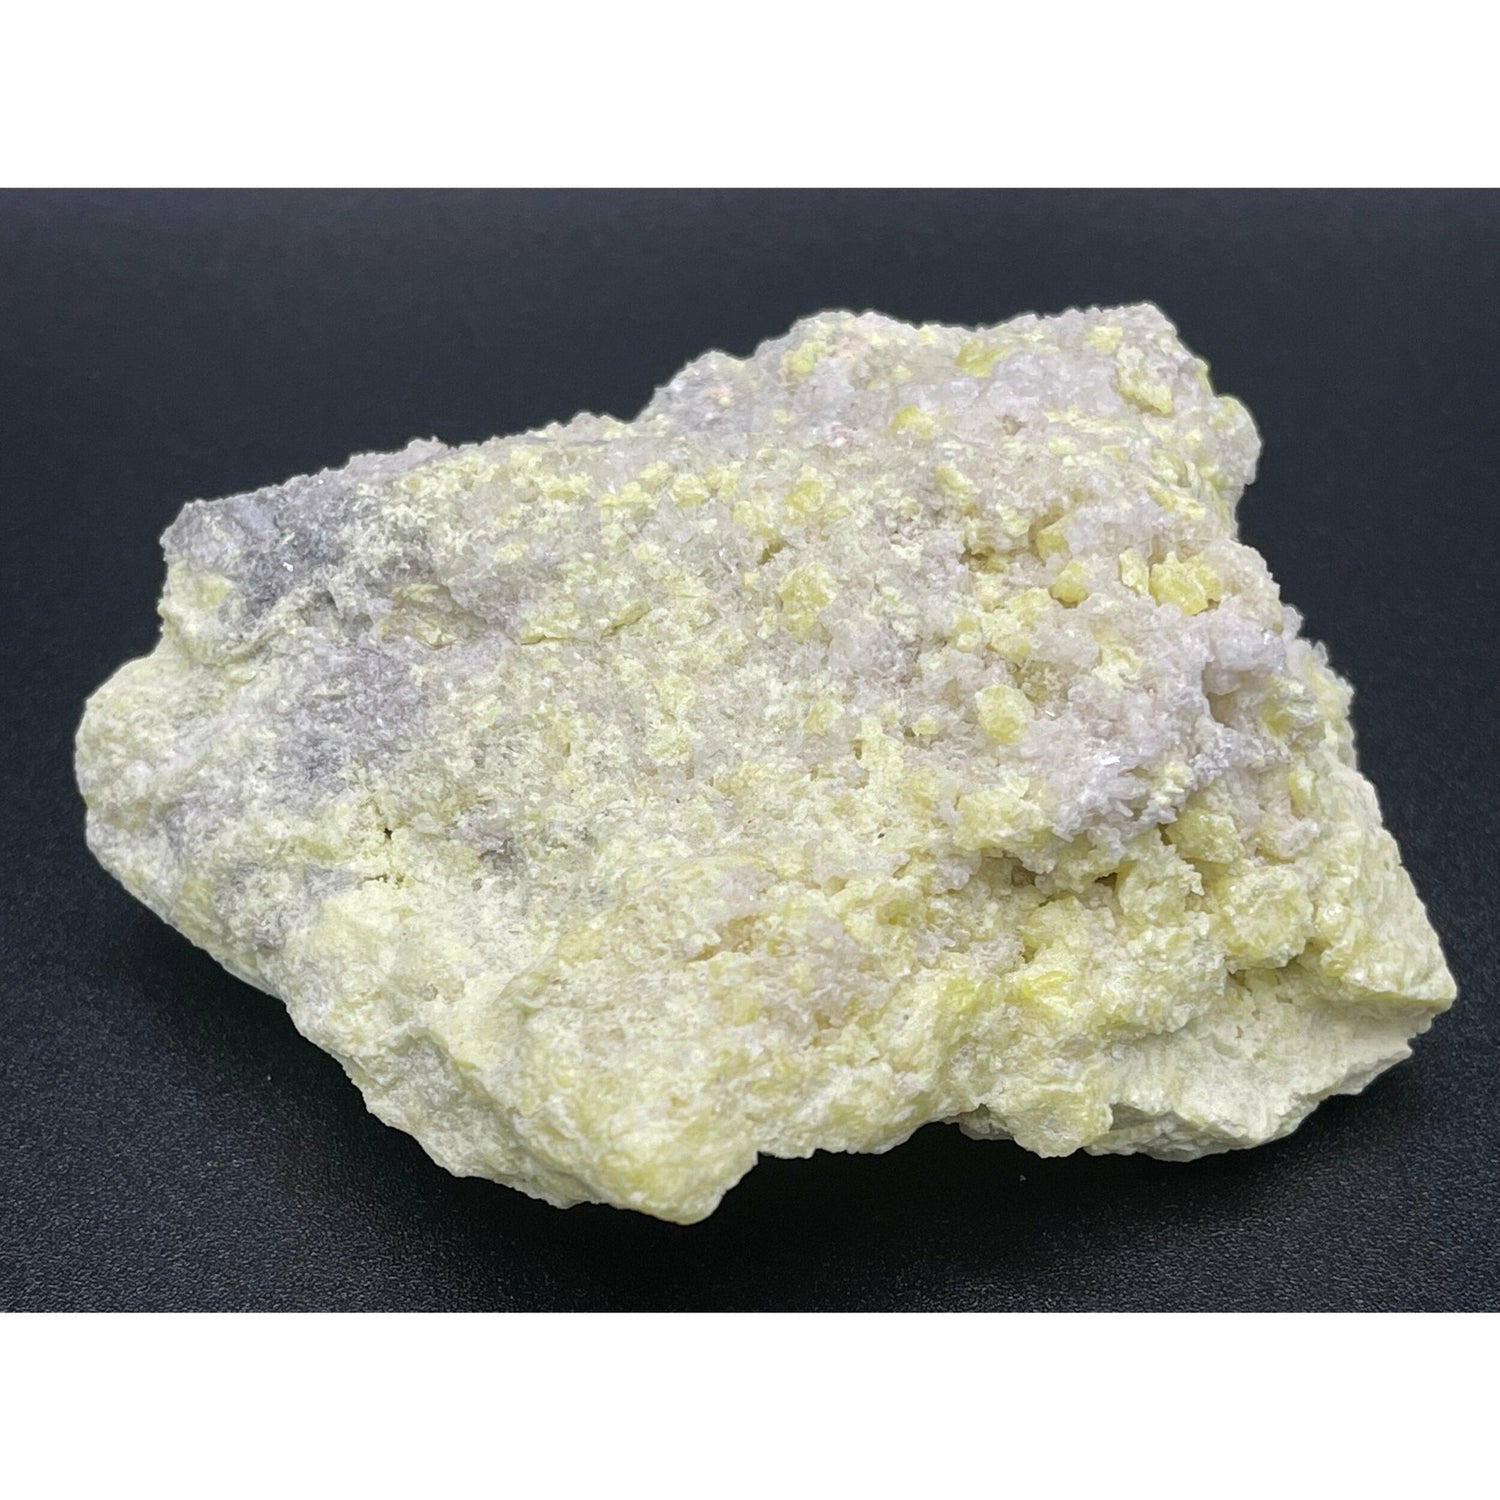 Sulfur Crystal 7 - Healing Stone Beings